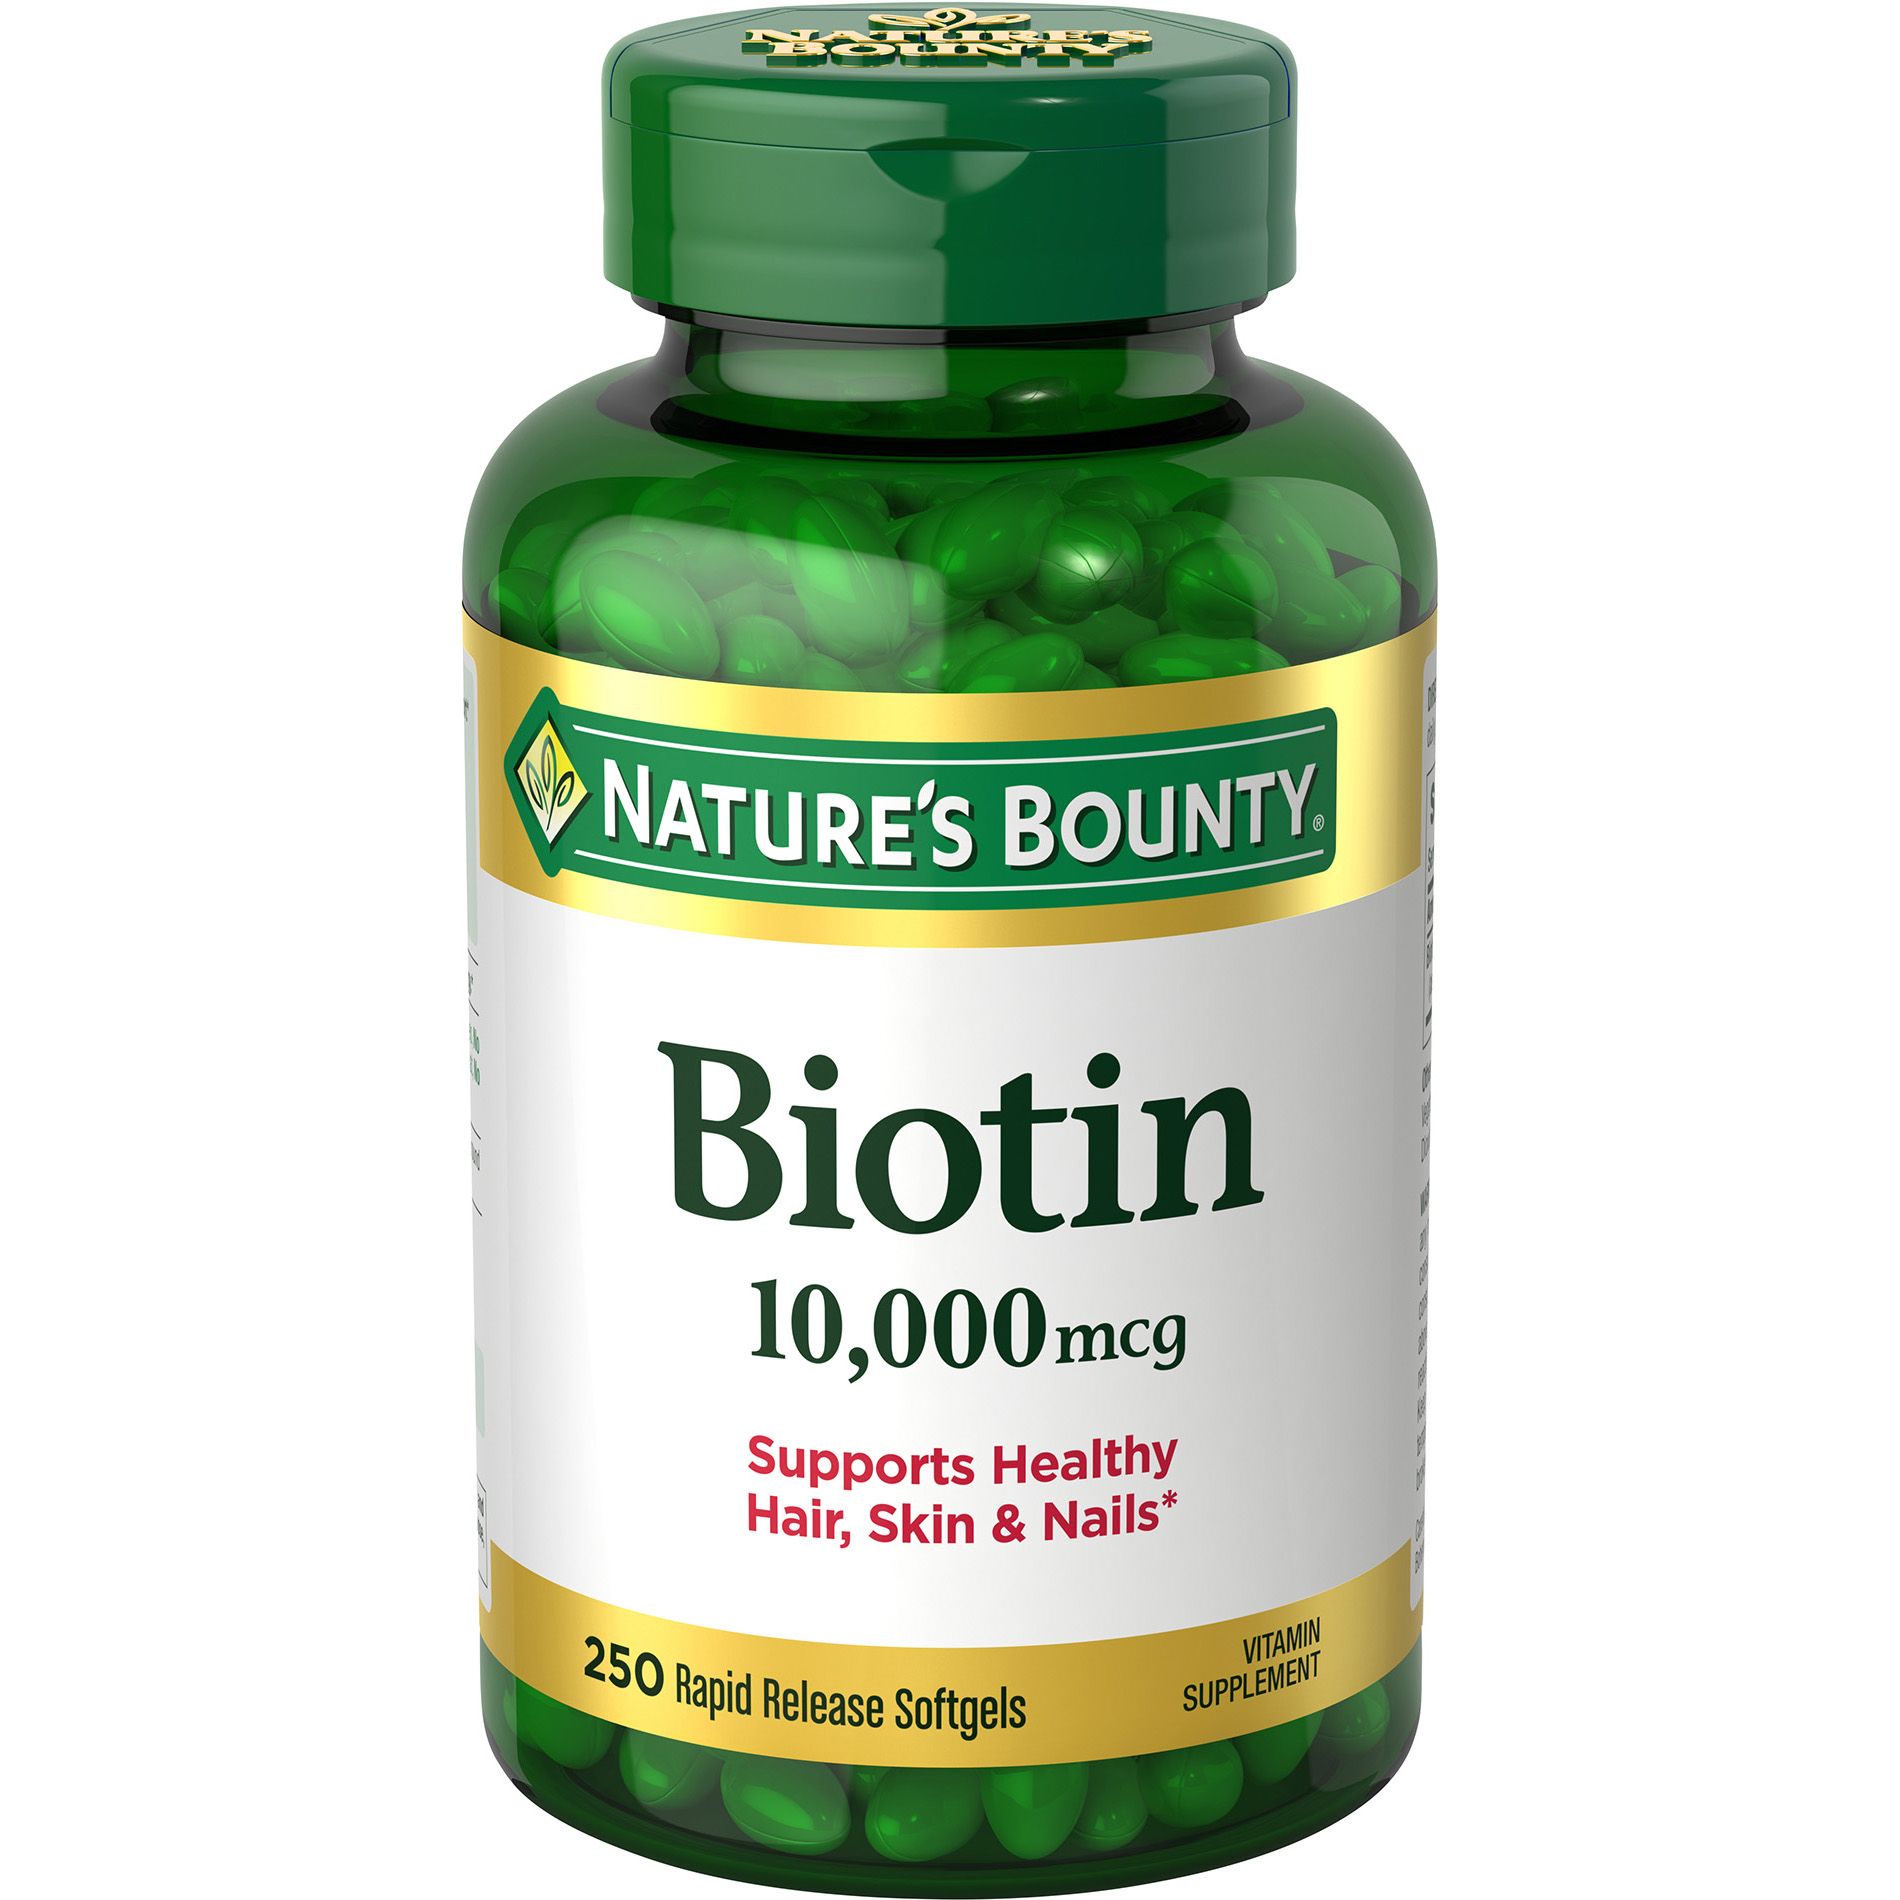 Nature's Bounty Biotin 10,000 mcg, 250 ct.